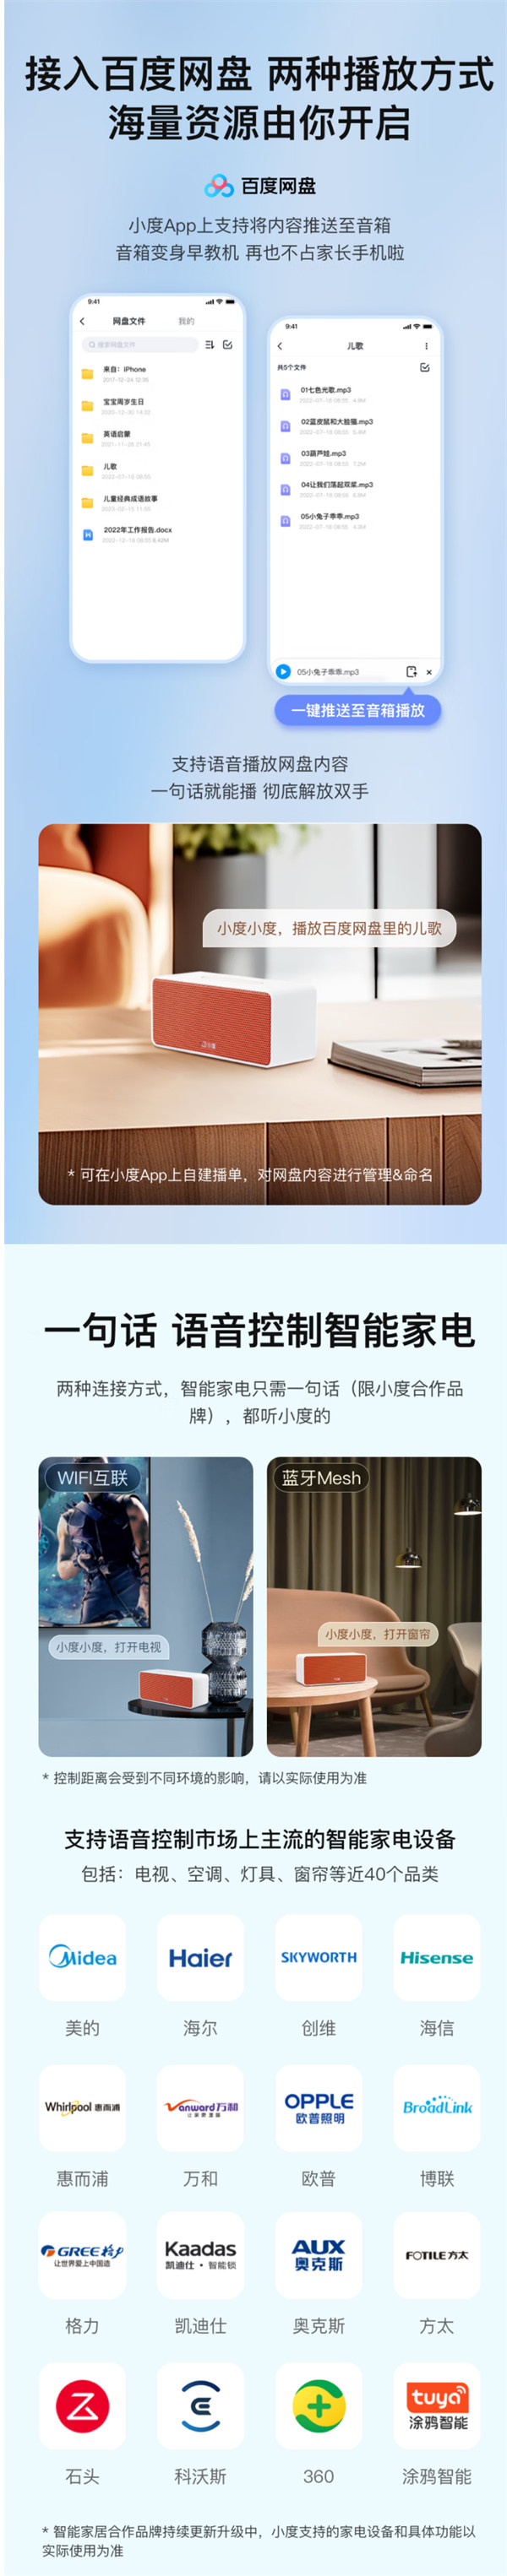 小度智能音箱 Xiaodu Sound 发布，预售到手价 89 元起